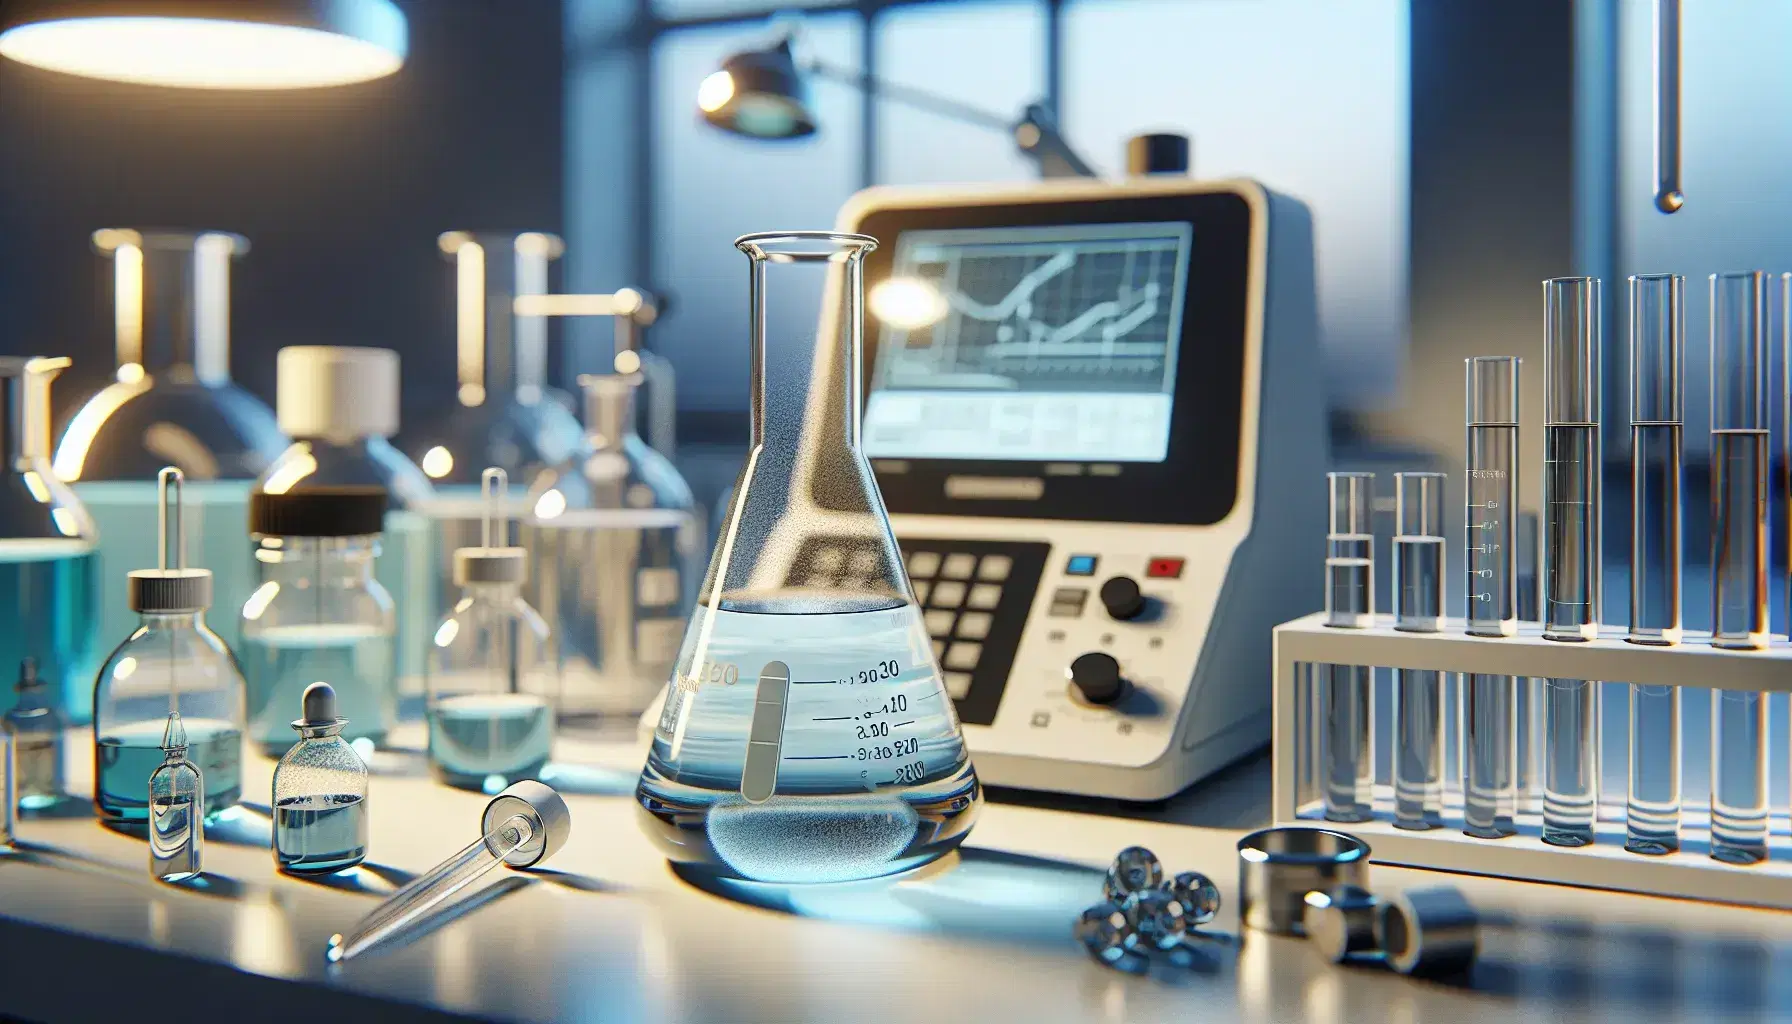 Laboratorio de química analítica con matraz Erlenmeyer y solución azul, pipeta de vidrio, espectrofotómetro, balanza analítica y frascos con líquidos de colores.